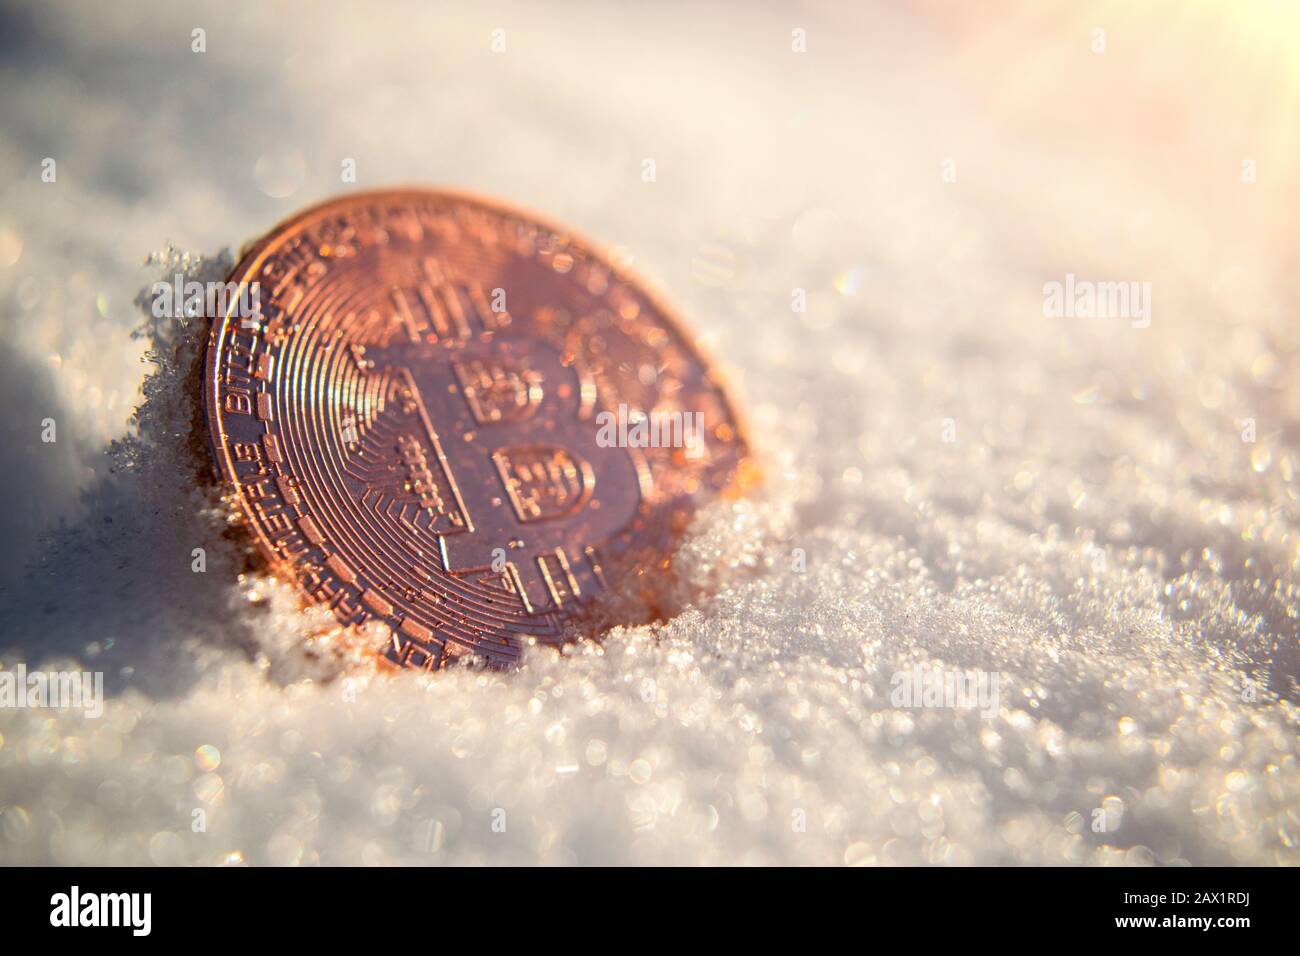 La moneda de oro de Bitcoin criptomoneda se congela en la nieve bajo el sol esperando a derretirse y descongelarse. El precio rompe la zona de congelación Foto de stock